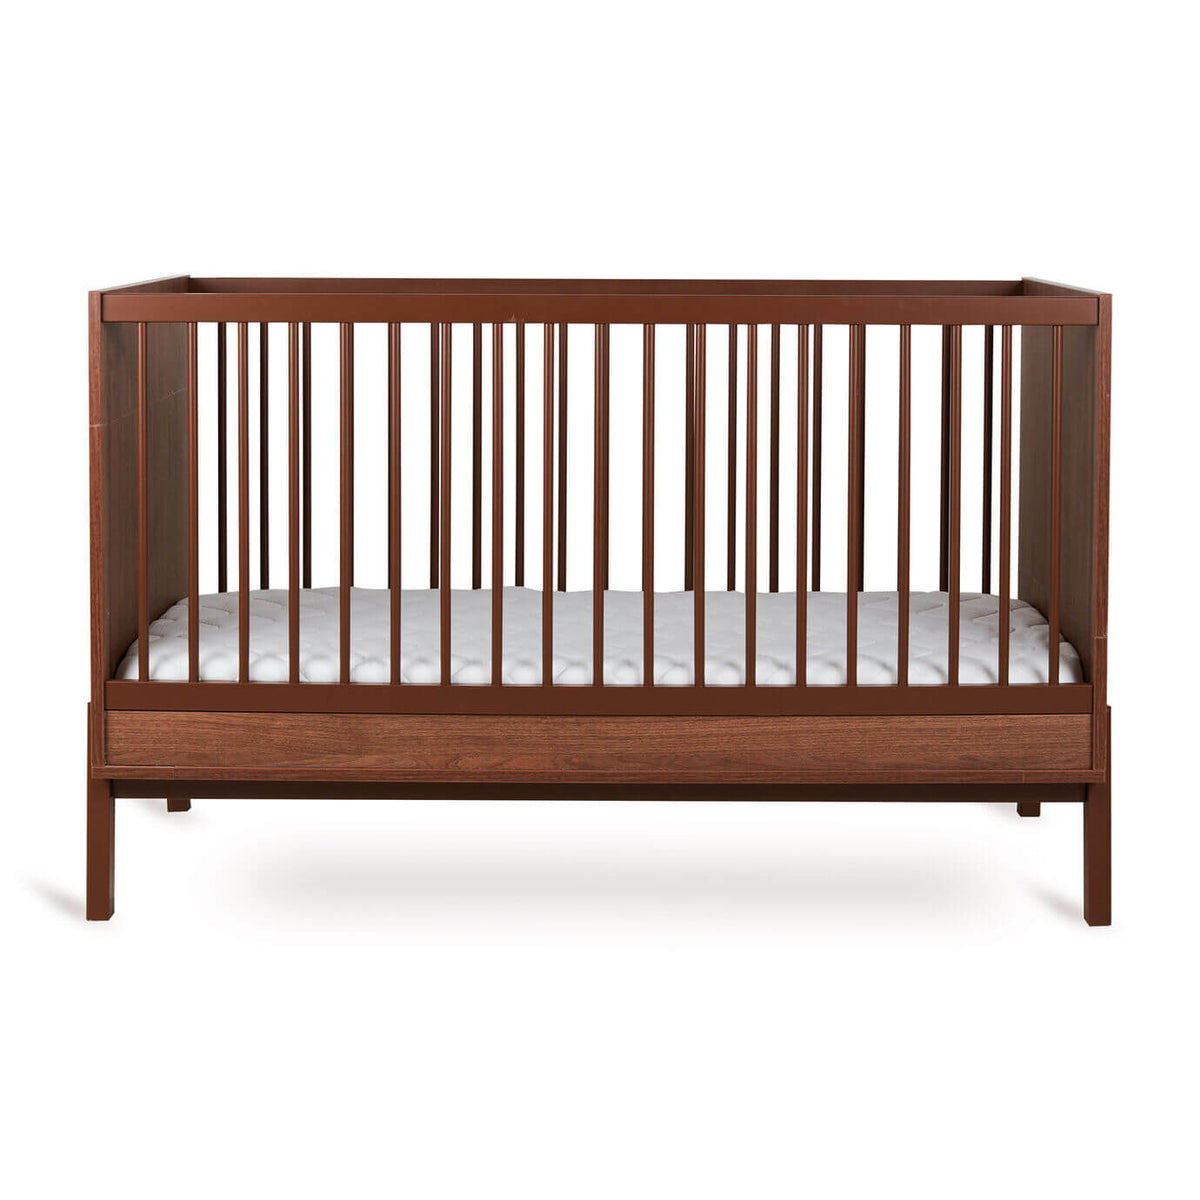 Lit à barreaux ASHI Châtaignier 140x70cm Quax - Cribs & Toddler Beds par Quax